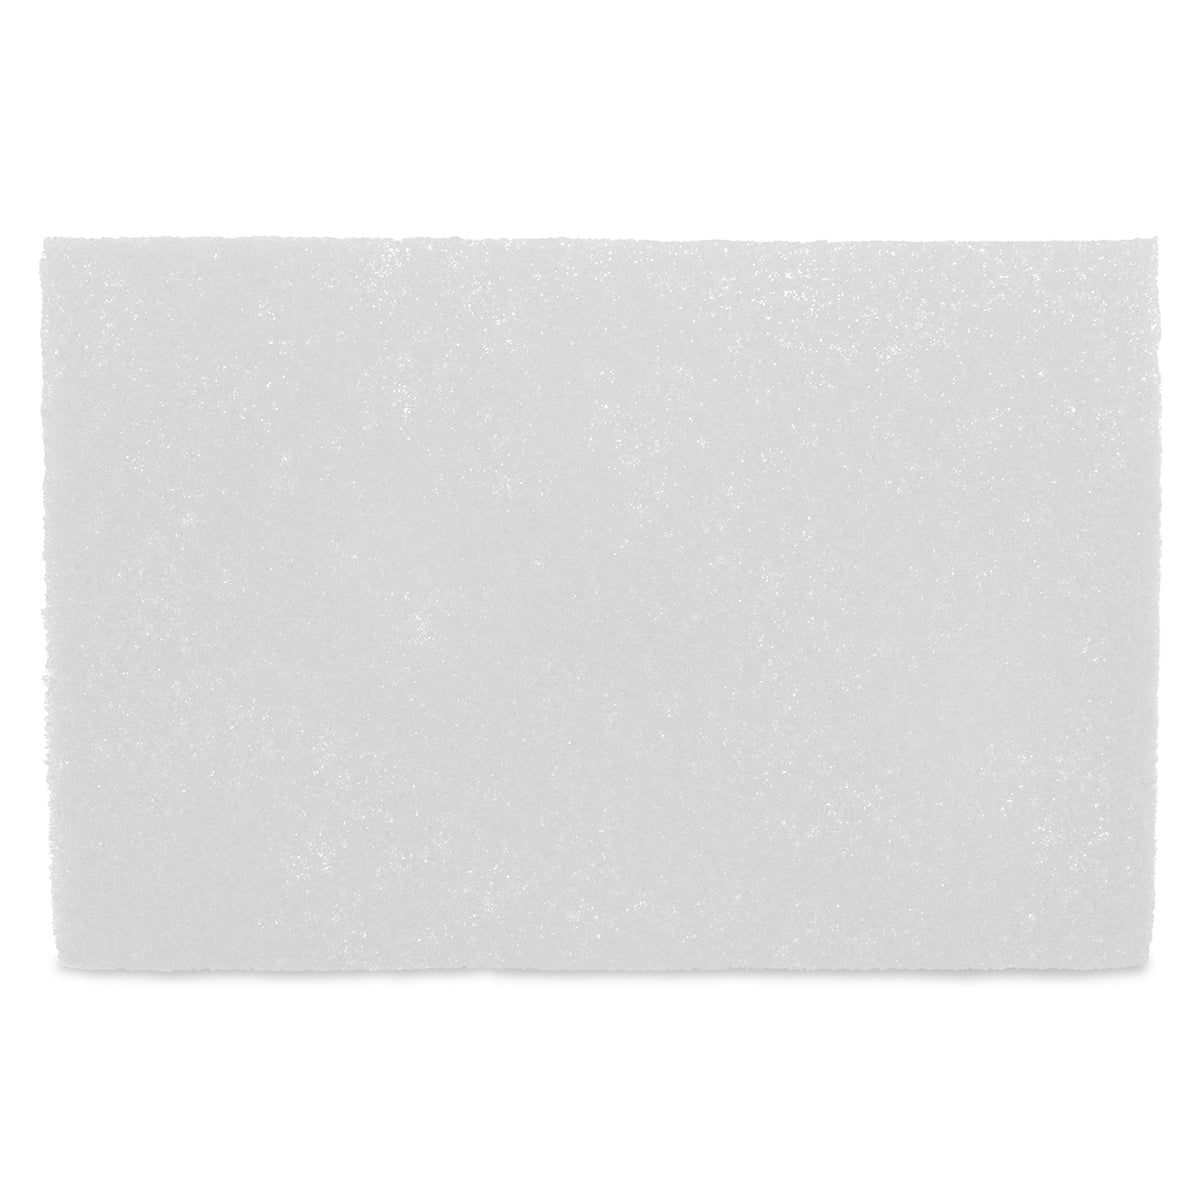 Fibra Abrasiva de 6 x 9 Pulgadas Color Blanco